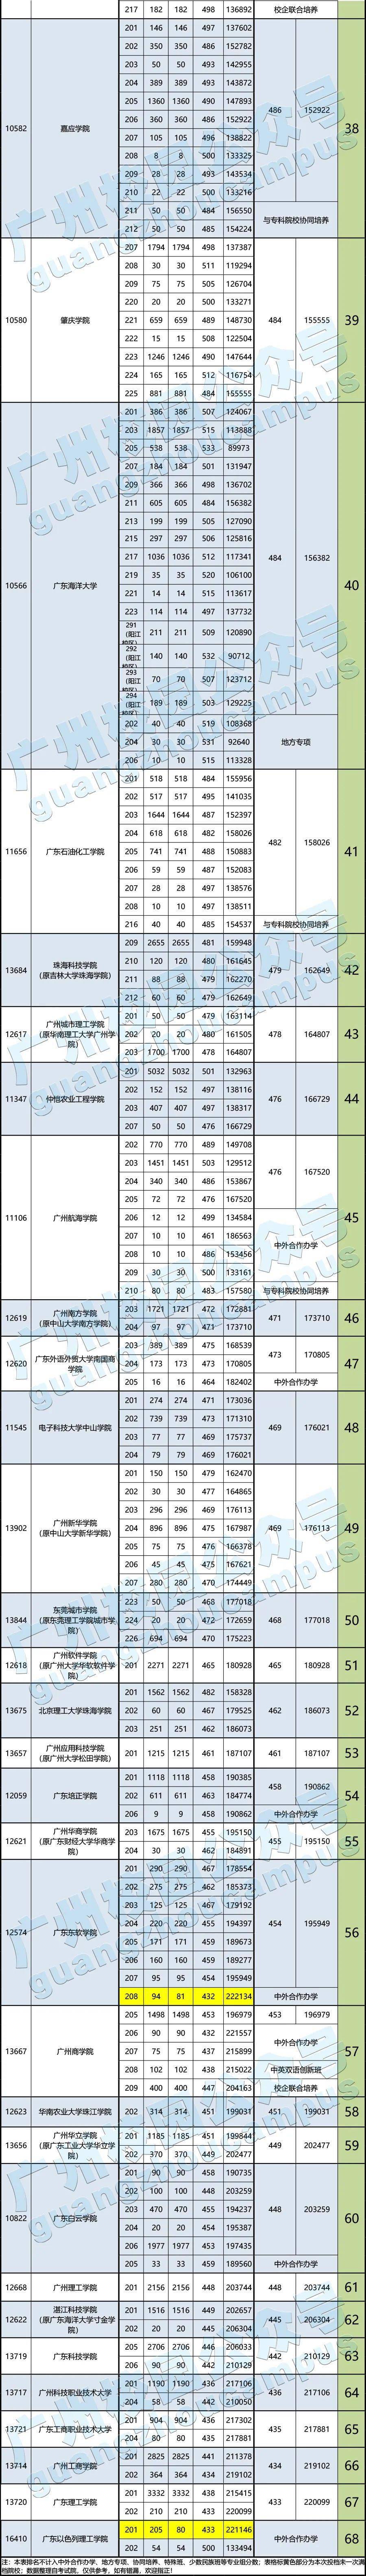 广东高考排行_2021年广东省内高校高考录取分数排名!第一被外客分校区拿下!